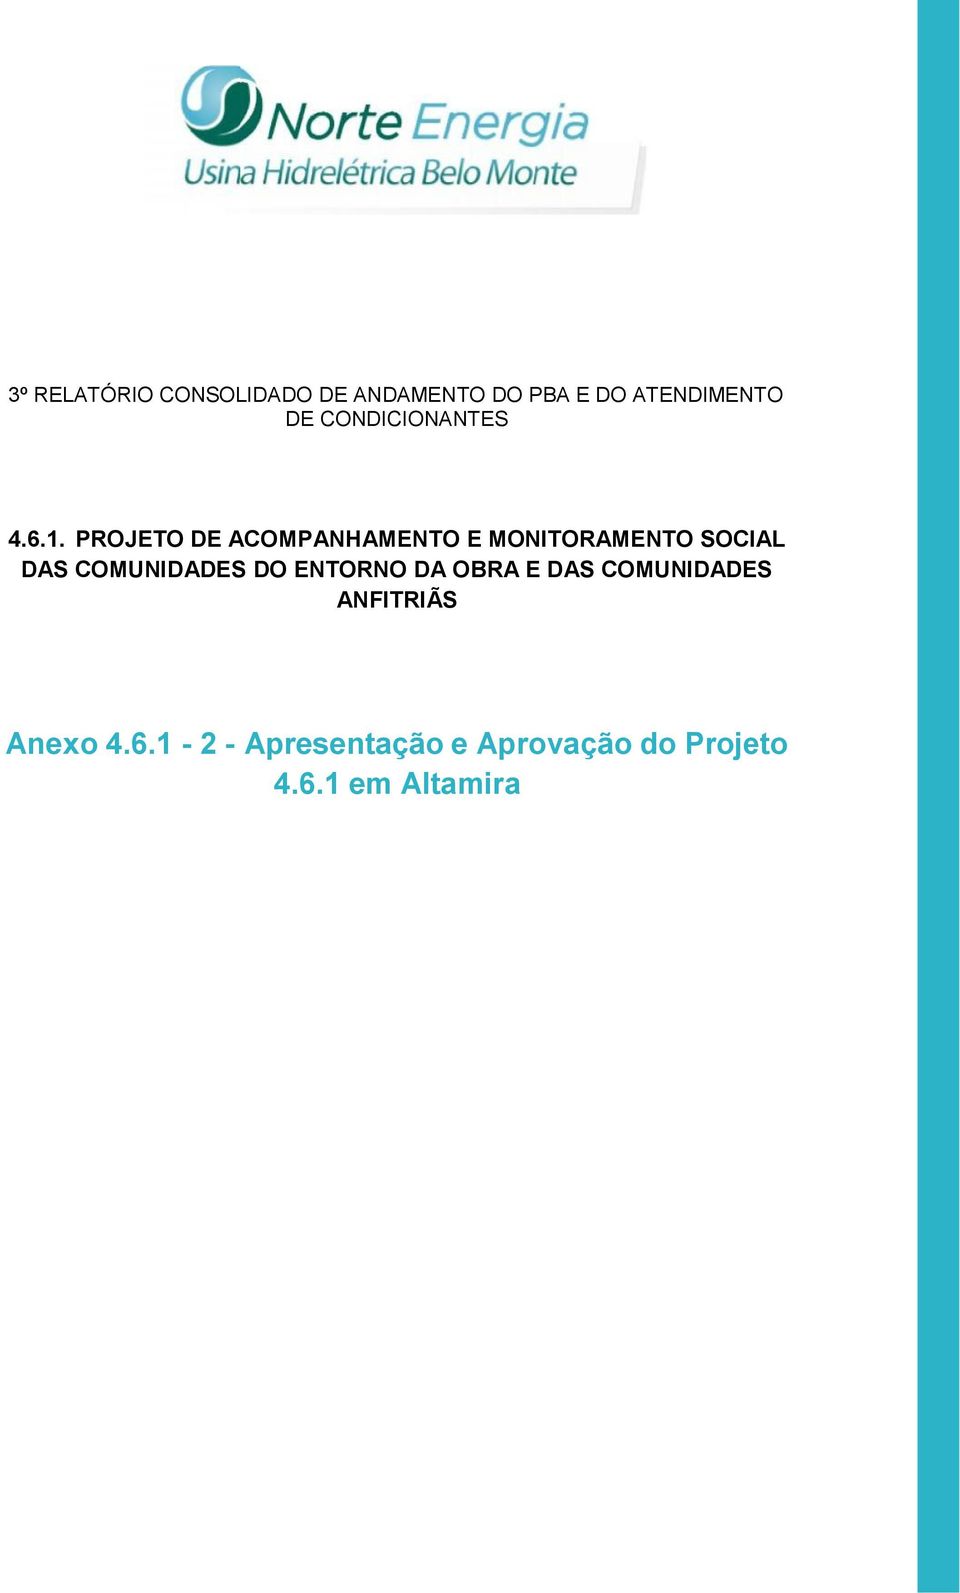 PROJETO DE ACOMPANHAMENTO E MONITORAMENTO SOCIAL DAS COMUNIDADES